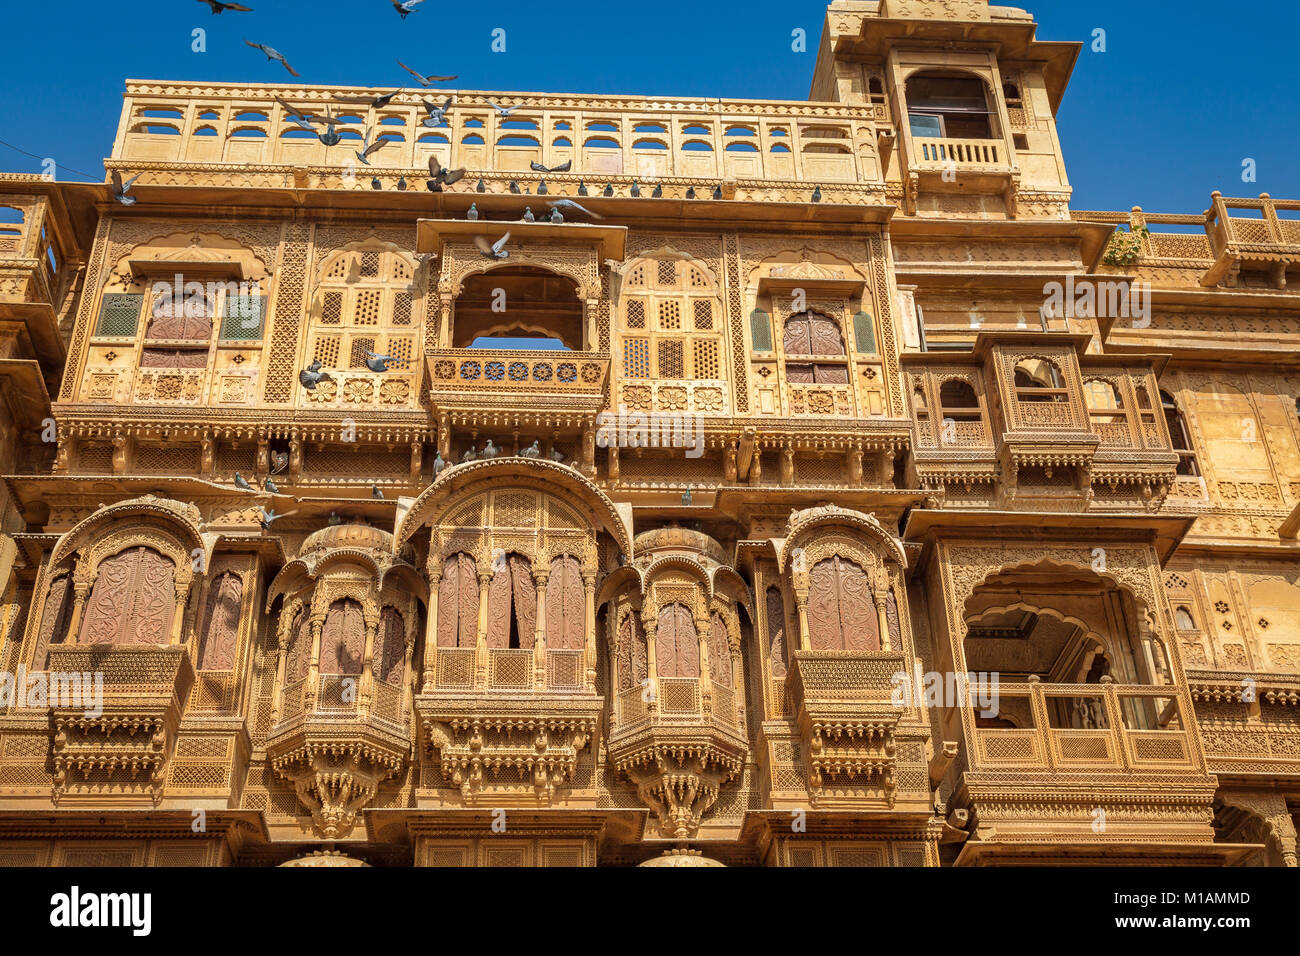 Rajasthan architektur kunst gebäude - Patwon ki Haveliyan. Eine königliche Residenz Gebäude in Jaisalmer, Rajasthan. Stockfoto